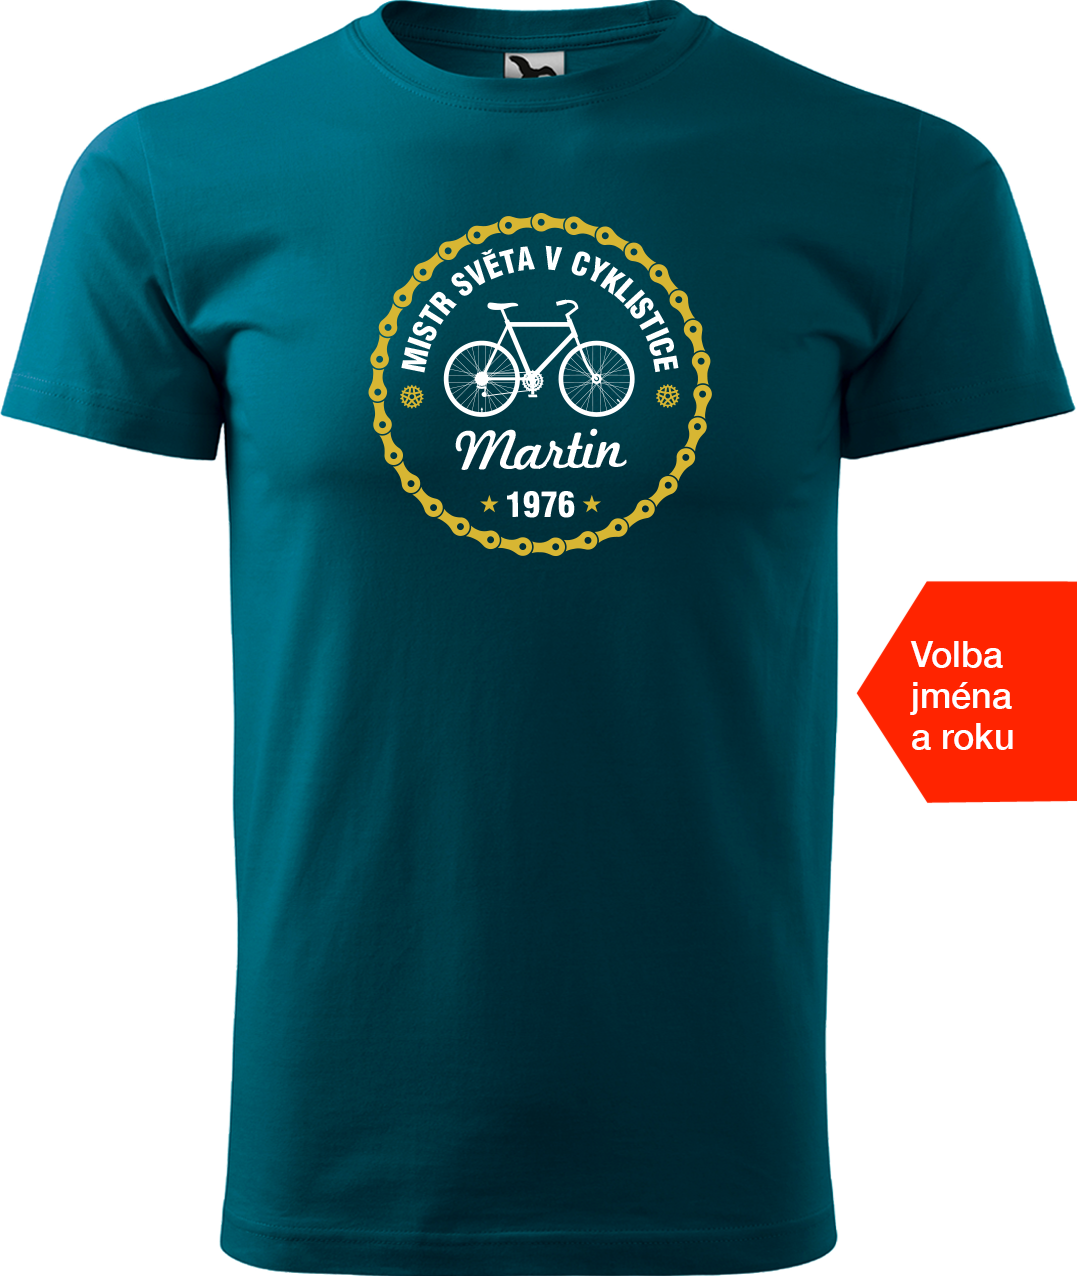 Pánské tričko pro cyklistu s věkem/rokem narození - Mistr světa v cyklistice Velikost: XL, Barva: Petrolejová (93)